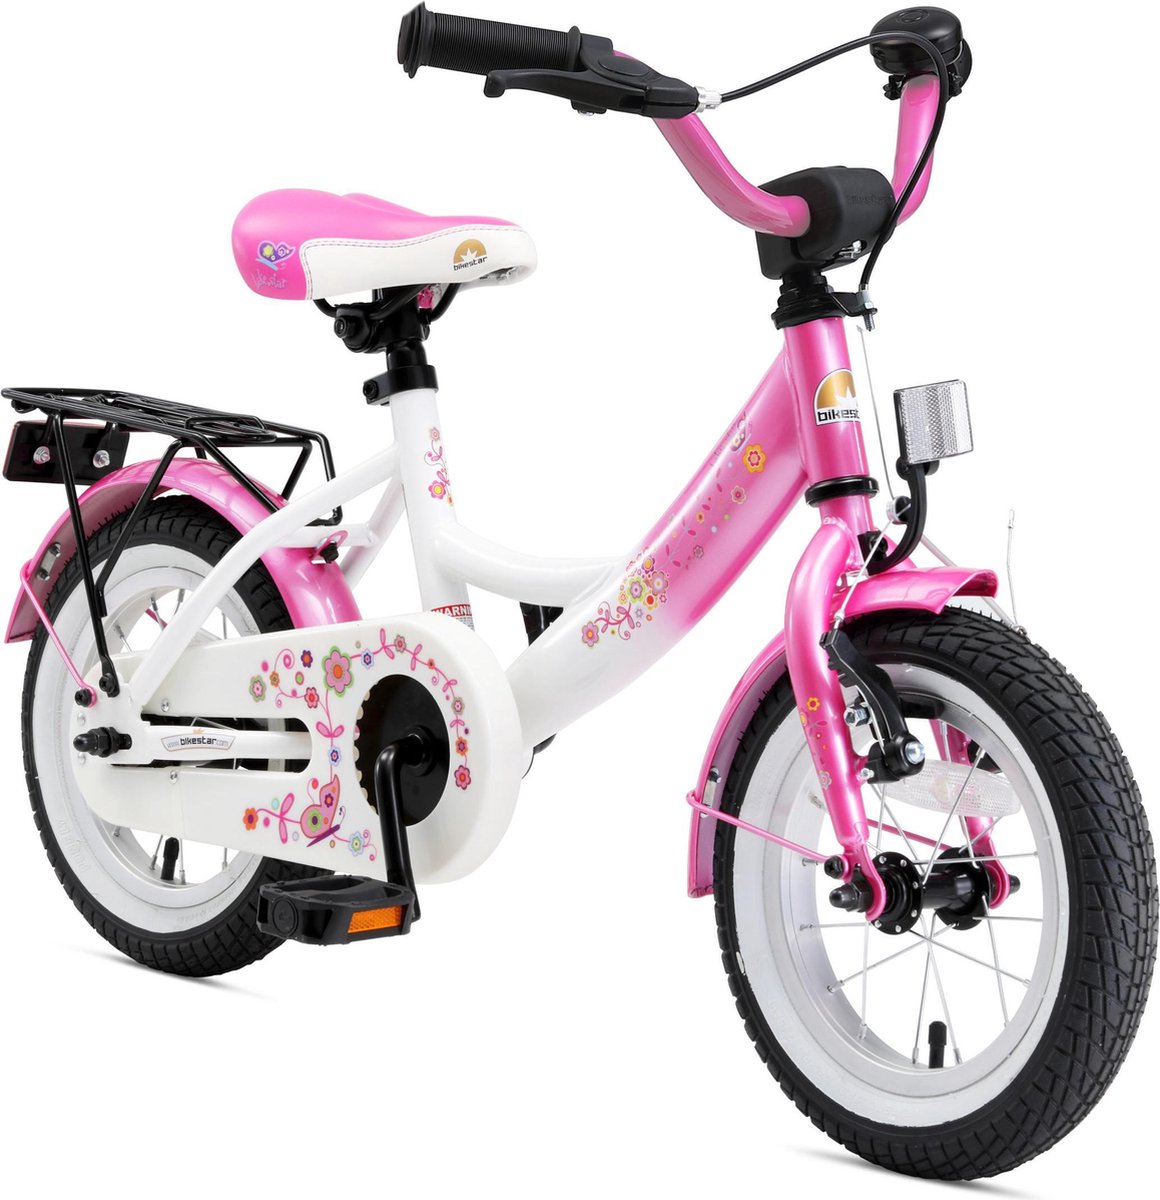 Bikestar 12 inch Classic kinderfiets roze wit